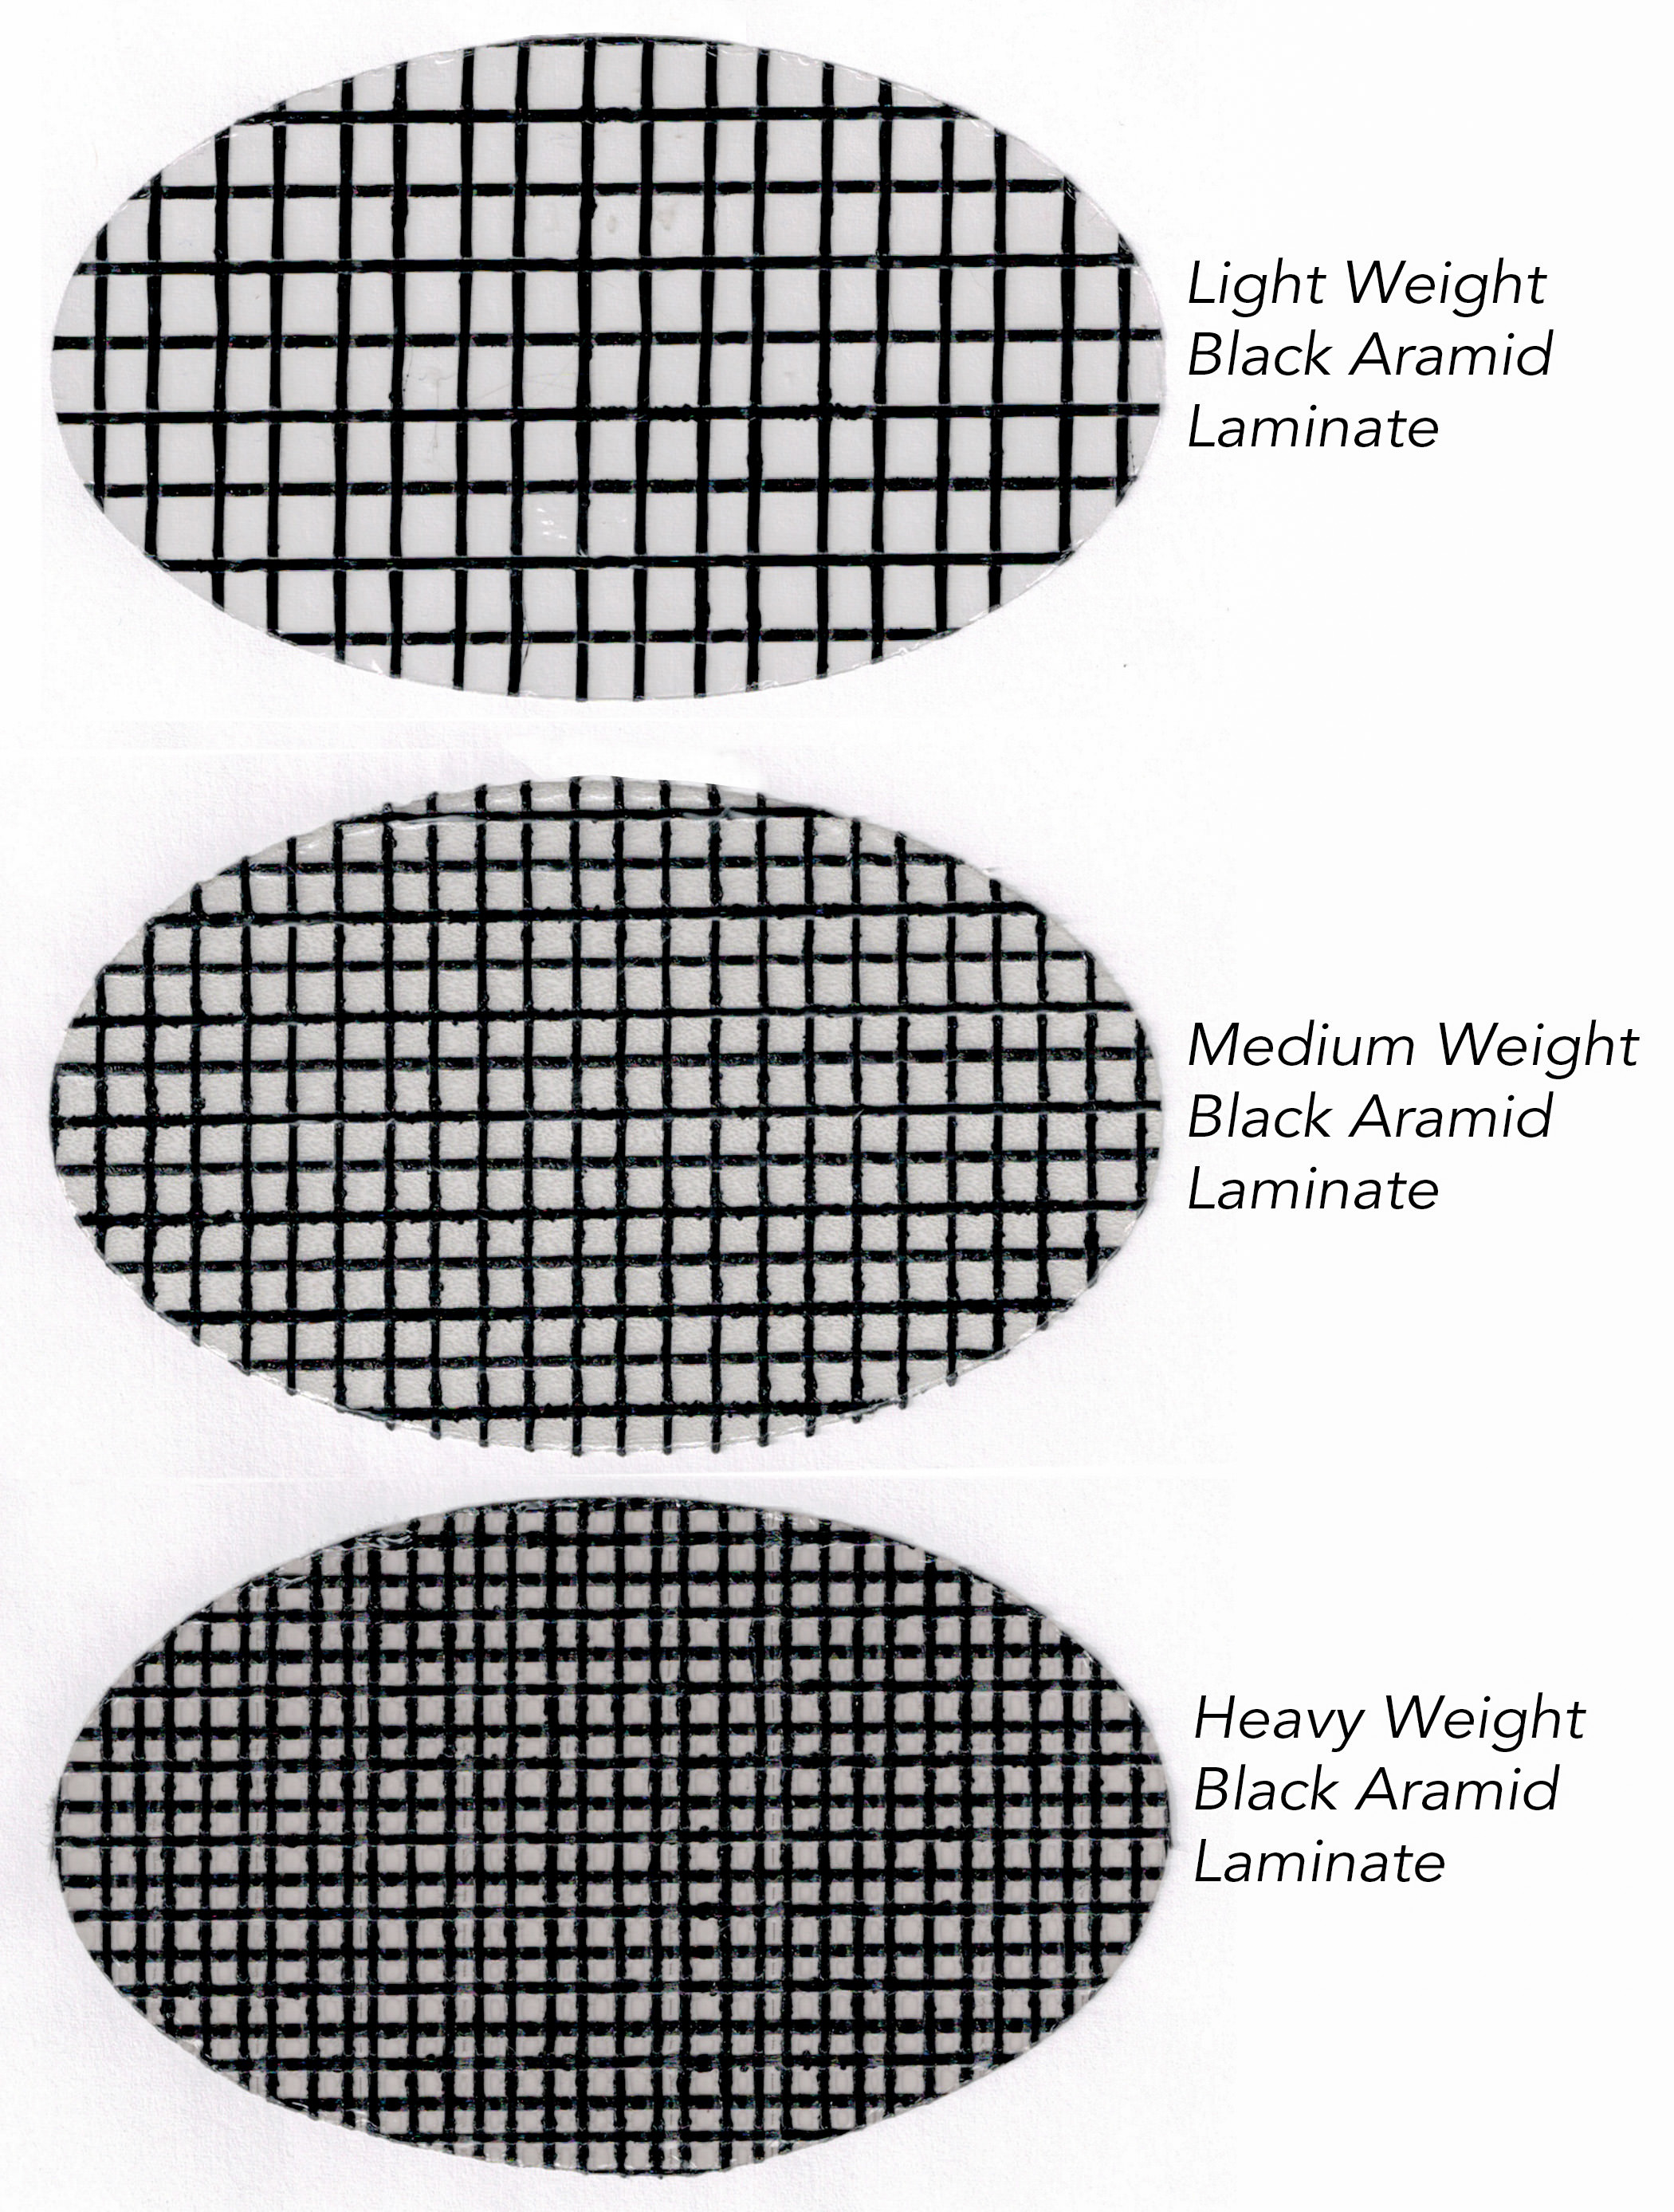 Drei verschiedene Gewichte von schwarzem Aramid-Laminat, hergestellt von Dimension Polyant für Tape-Drive-Segel. Das leichte Material wird für kleine Boote oder Leichtwind-Genua verwendet. Das mittelschwere Laminat kann für Großsegel bis zu 45 Fuß verwendet werden, während das hea...